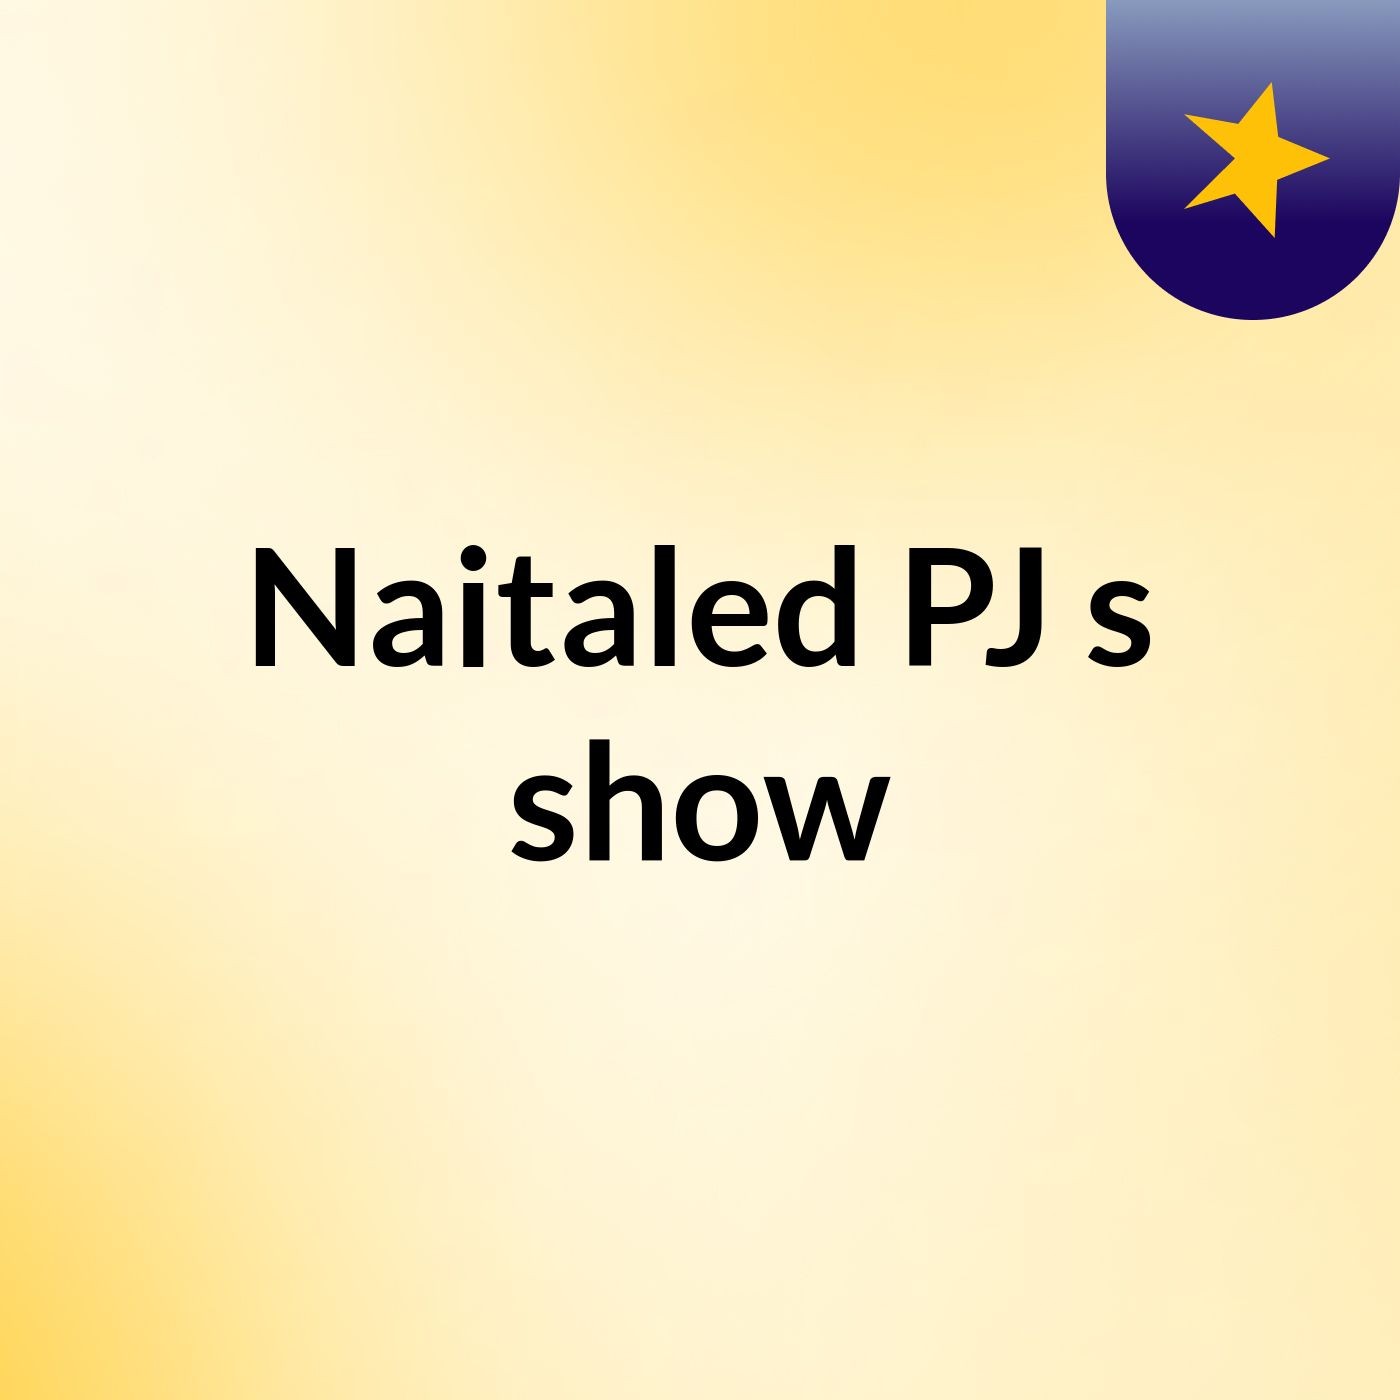 Naitaled PJ's show